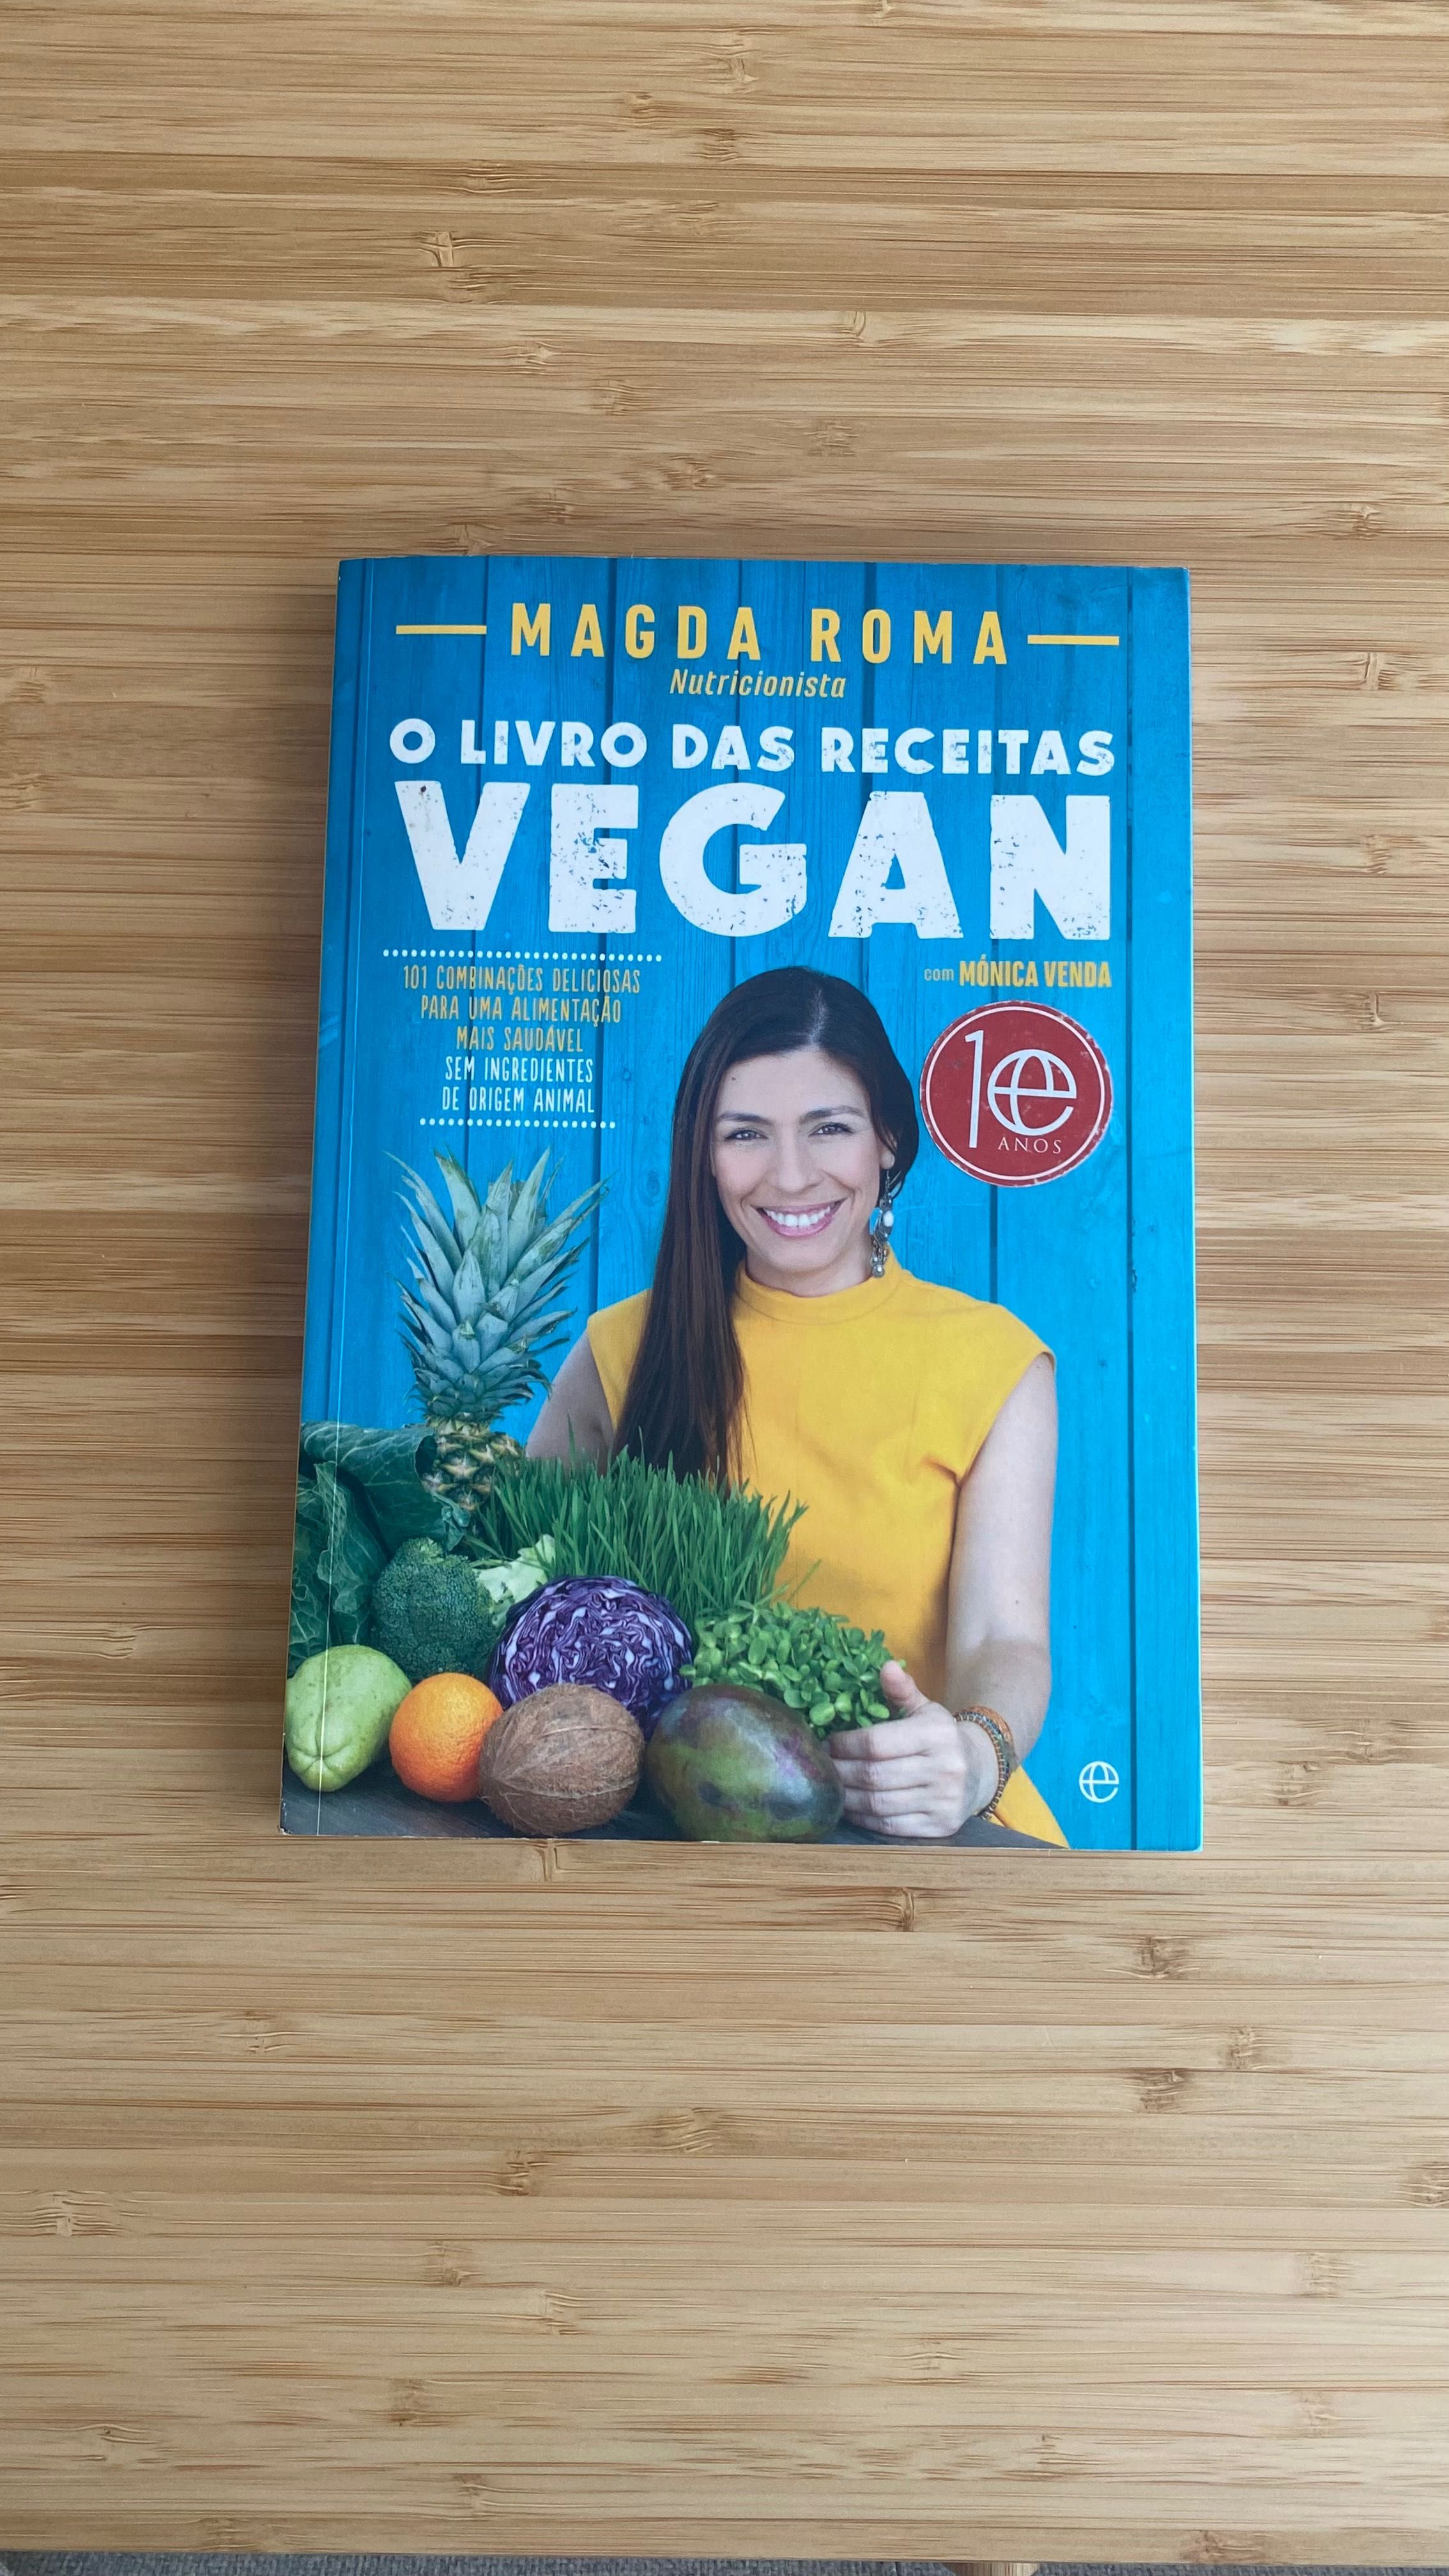 Livro “O Livro das Receitas Vegan”